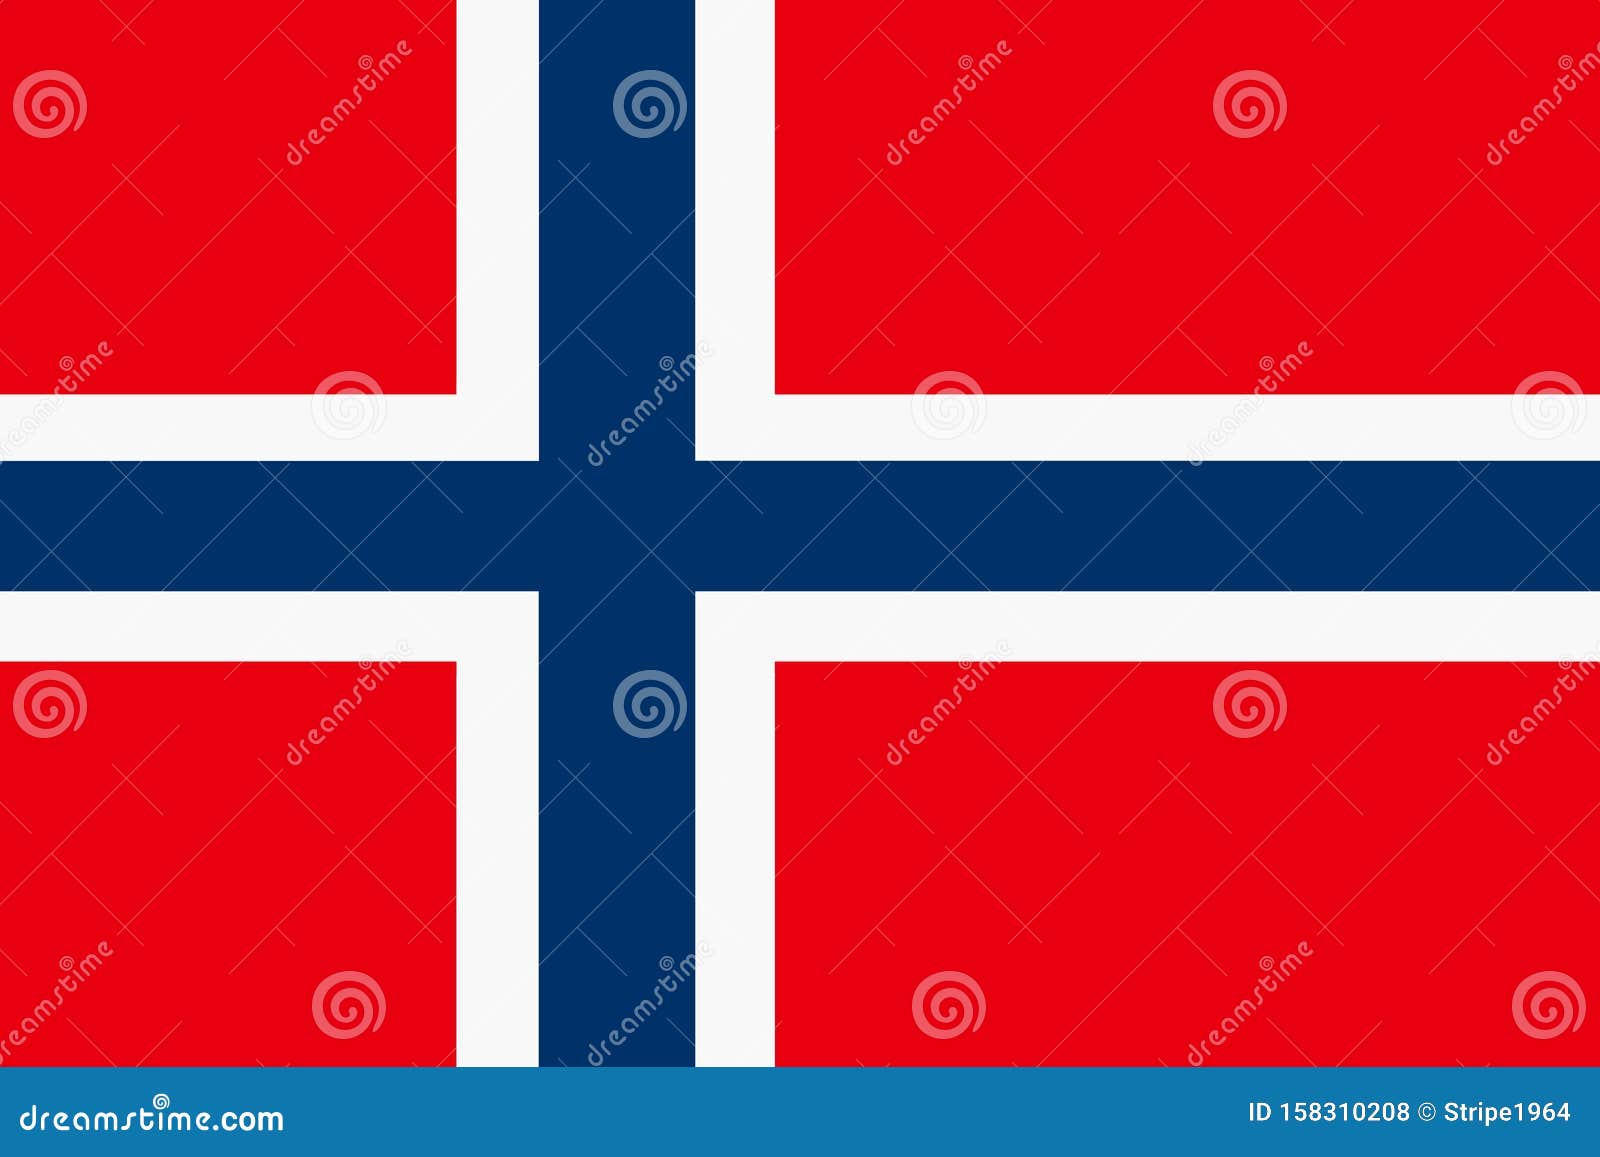 Lá cờ Na Uy được thiết kế đơn giản nhưng tinh tế, với màu đỏ, xanh và trắng tượng trưng cho lòng yêu nước, những ngọn núi và biển bao quanh đất nước. Bức hình liên quan đến lá cờ Na Uy sẽ rất đẹp và ấn tượng.